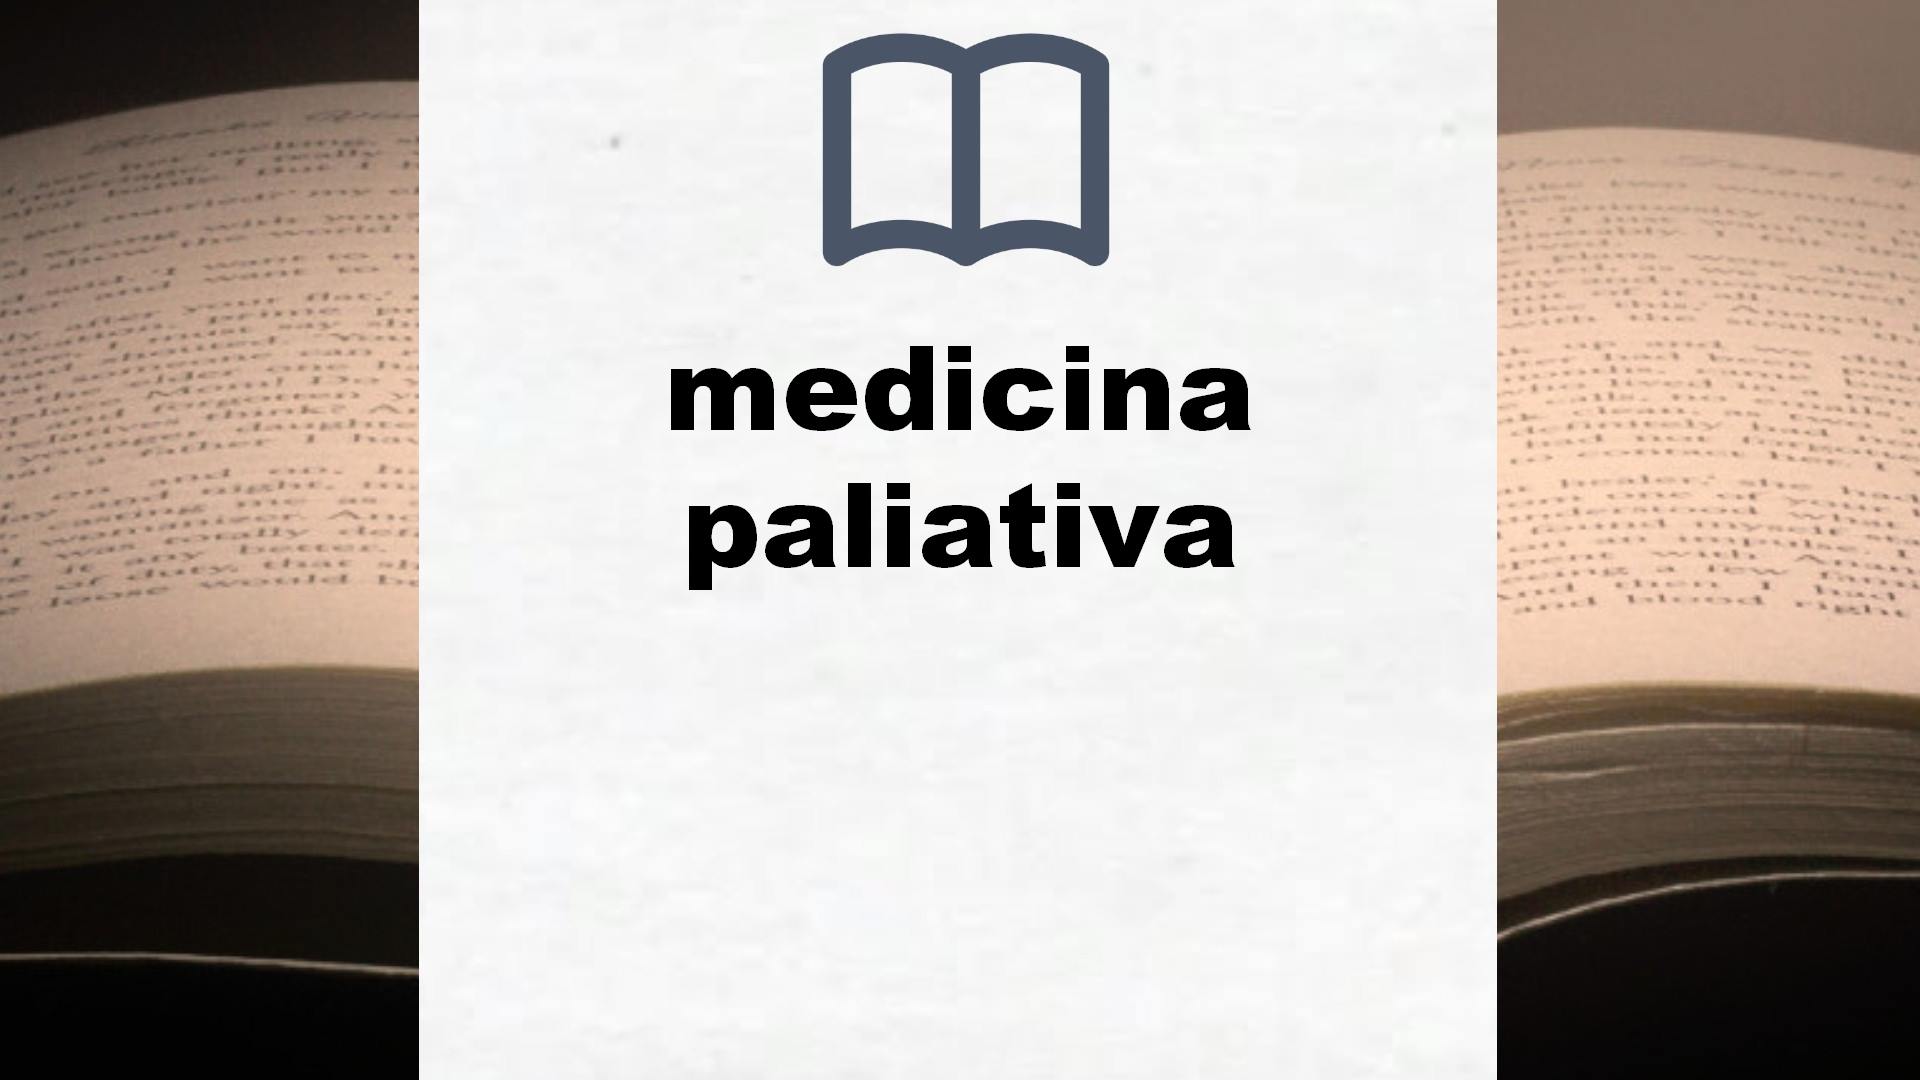 Libros sobre medicina paliativa